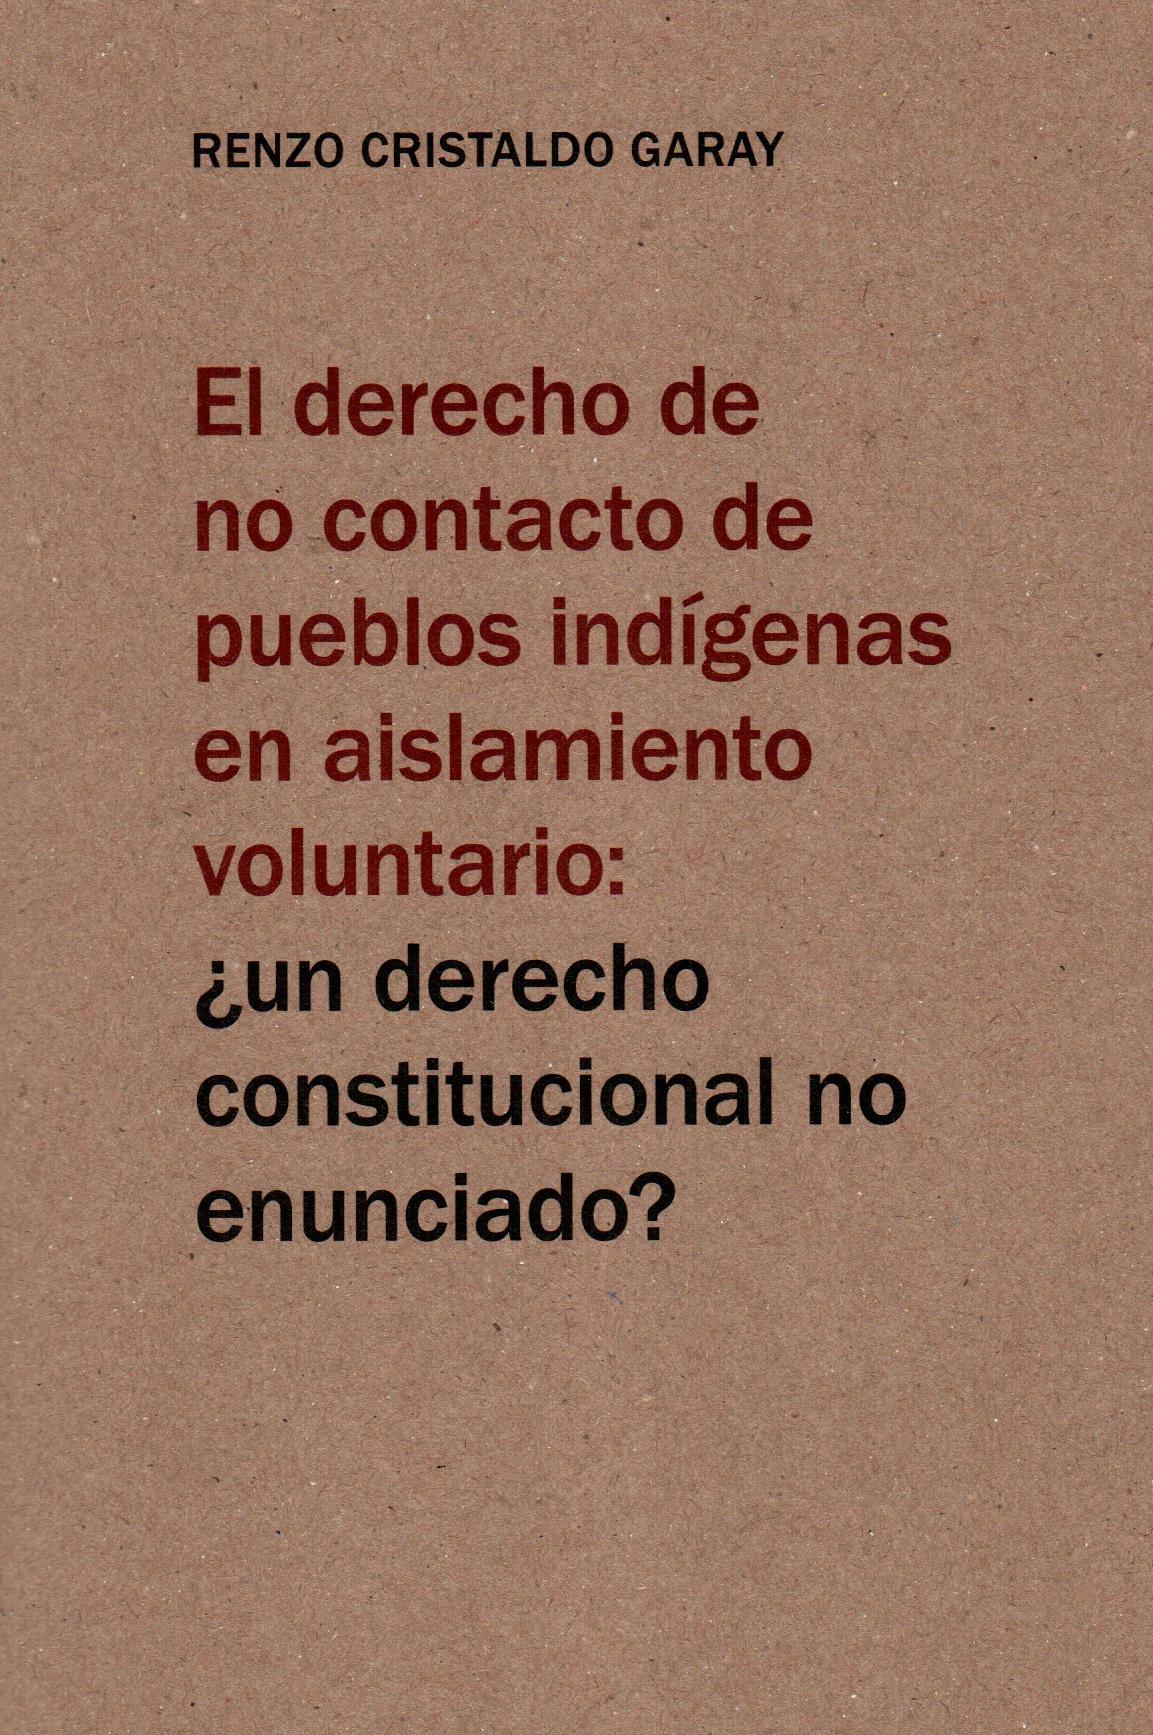 Imagen de portada del libro El derecho de no contacto de pueblos indígenas en aislamiento voluntario